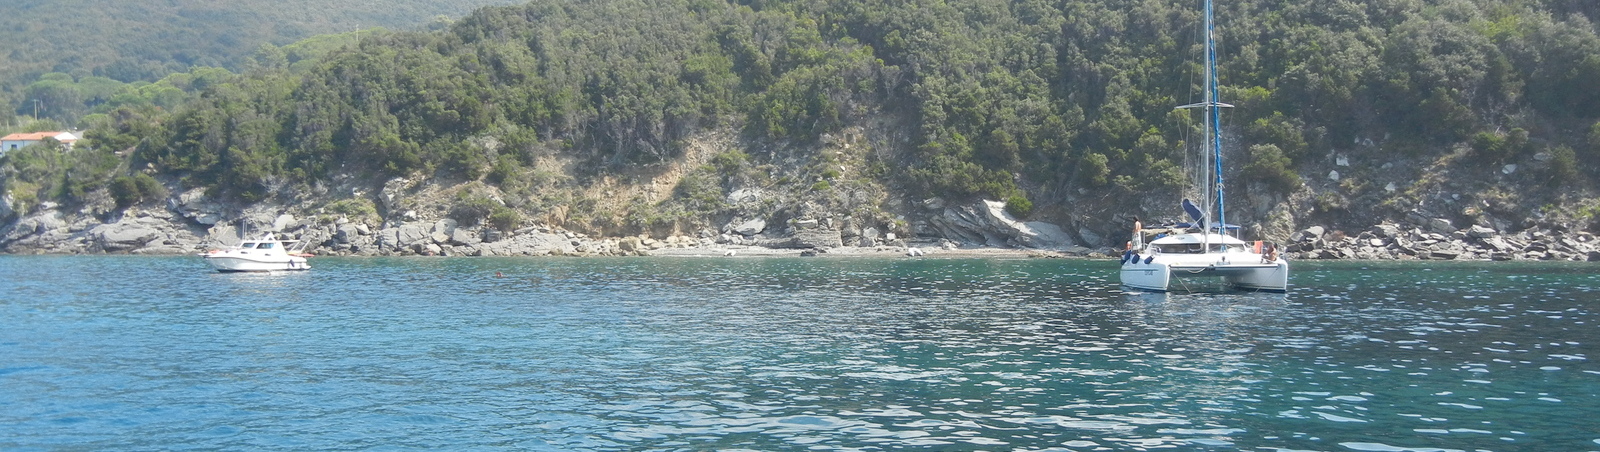 Elba anchorage